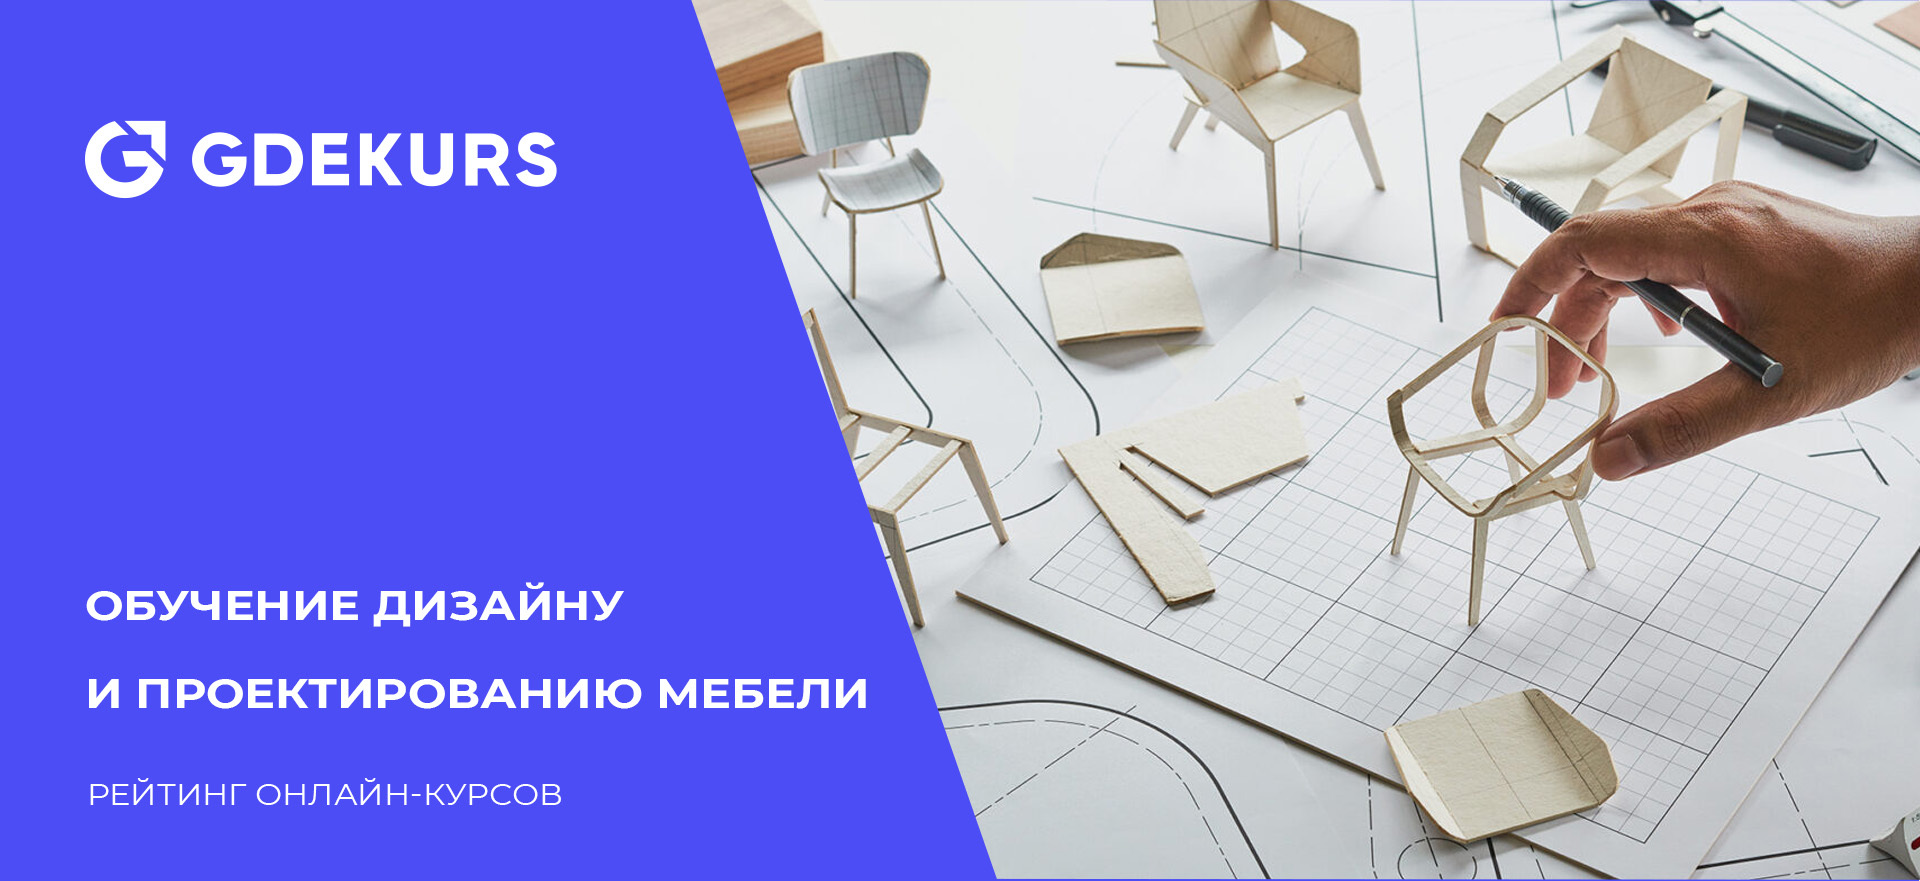 Как организовать бизнес по изготовлению мебели под заказ | internat-mednogorsk.ru